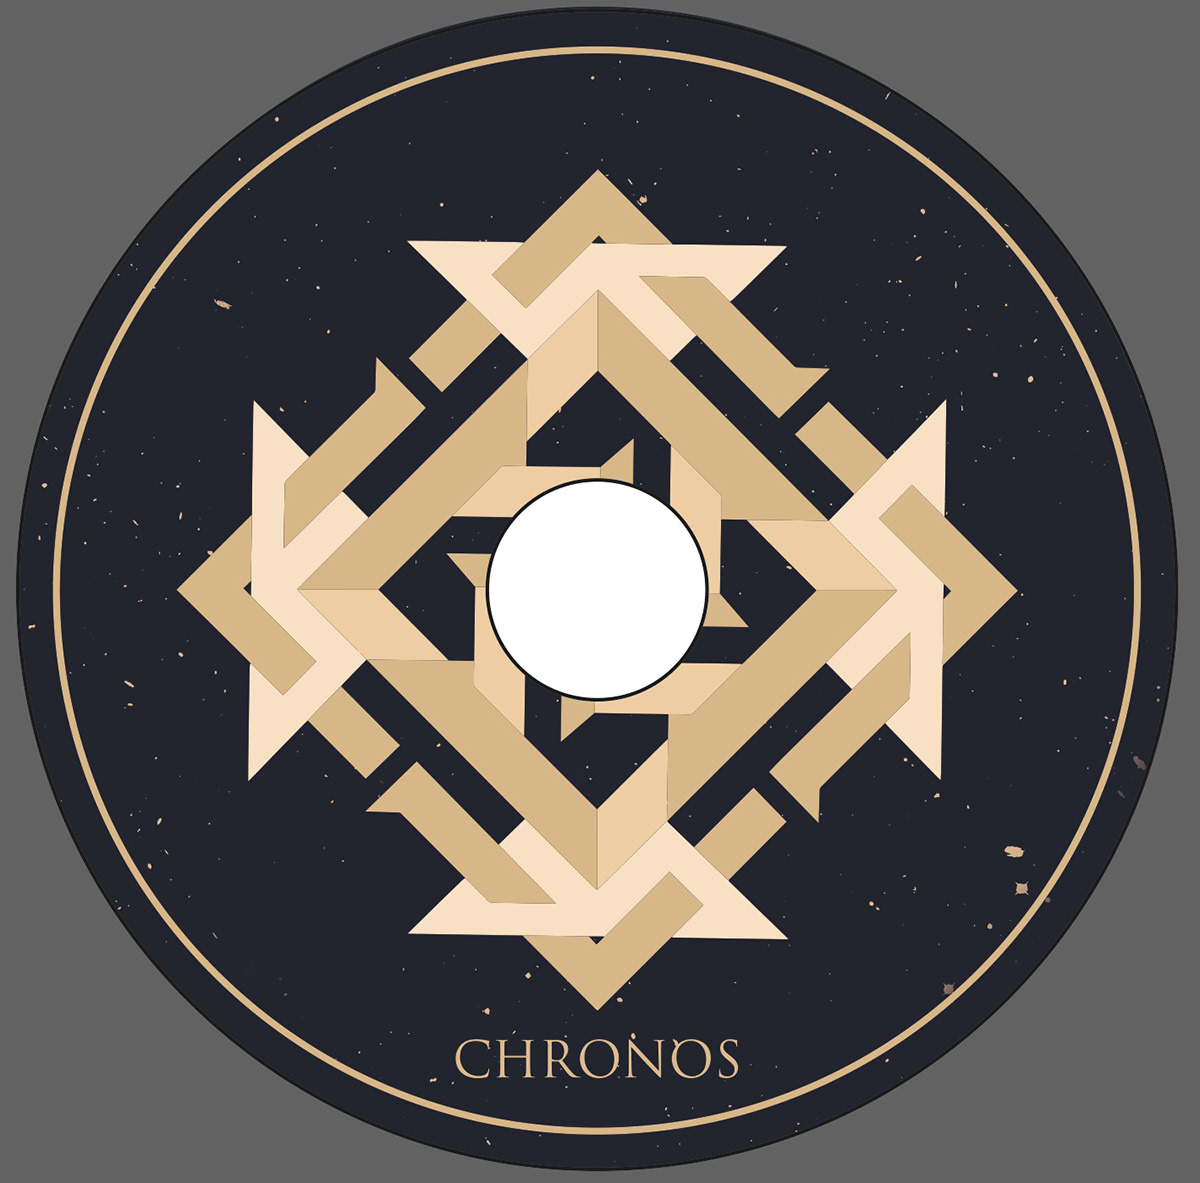 mythology chronos gods skulls metal music cover snake spacetime